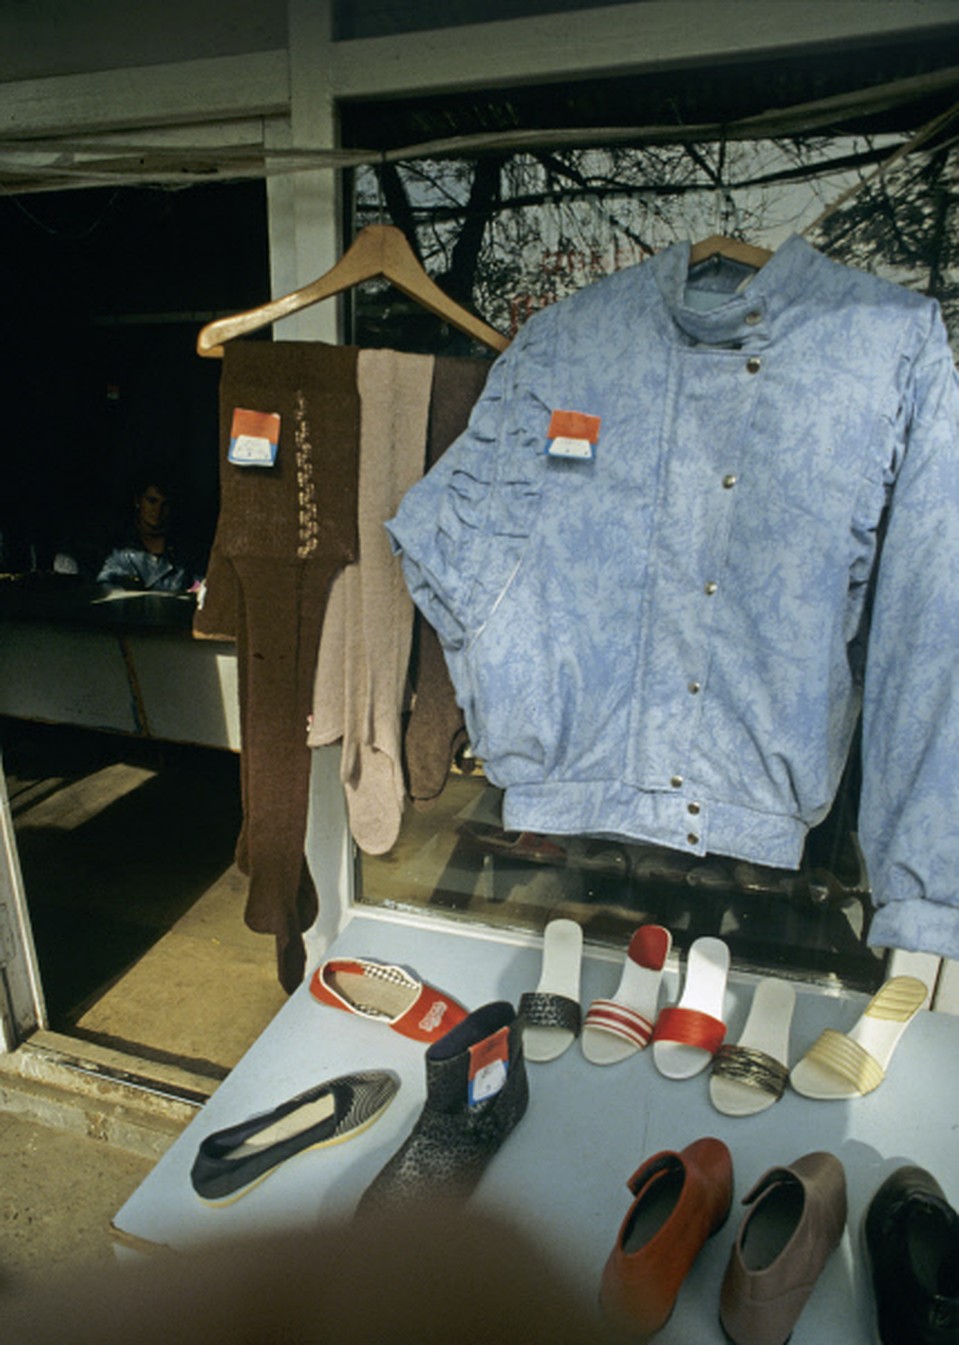 Мода на джинсы-«варенки» пришла в СССР еще в 80-х, а в начале 90-х достигла своего пика. Фото - 1989 год. Фото: РИА Новости